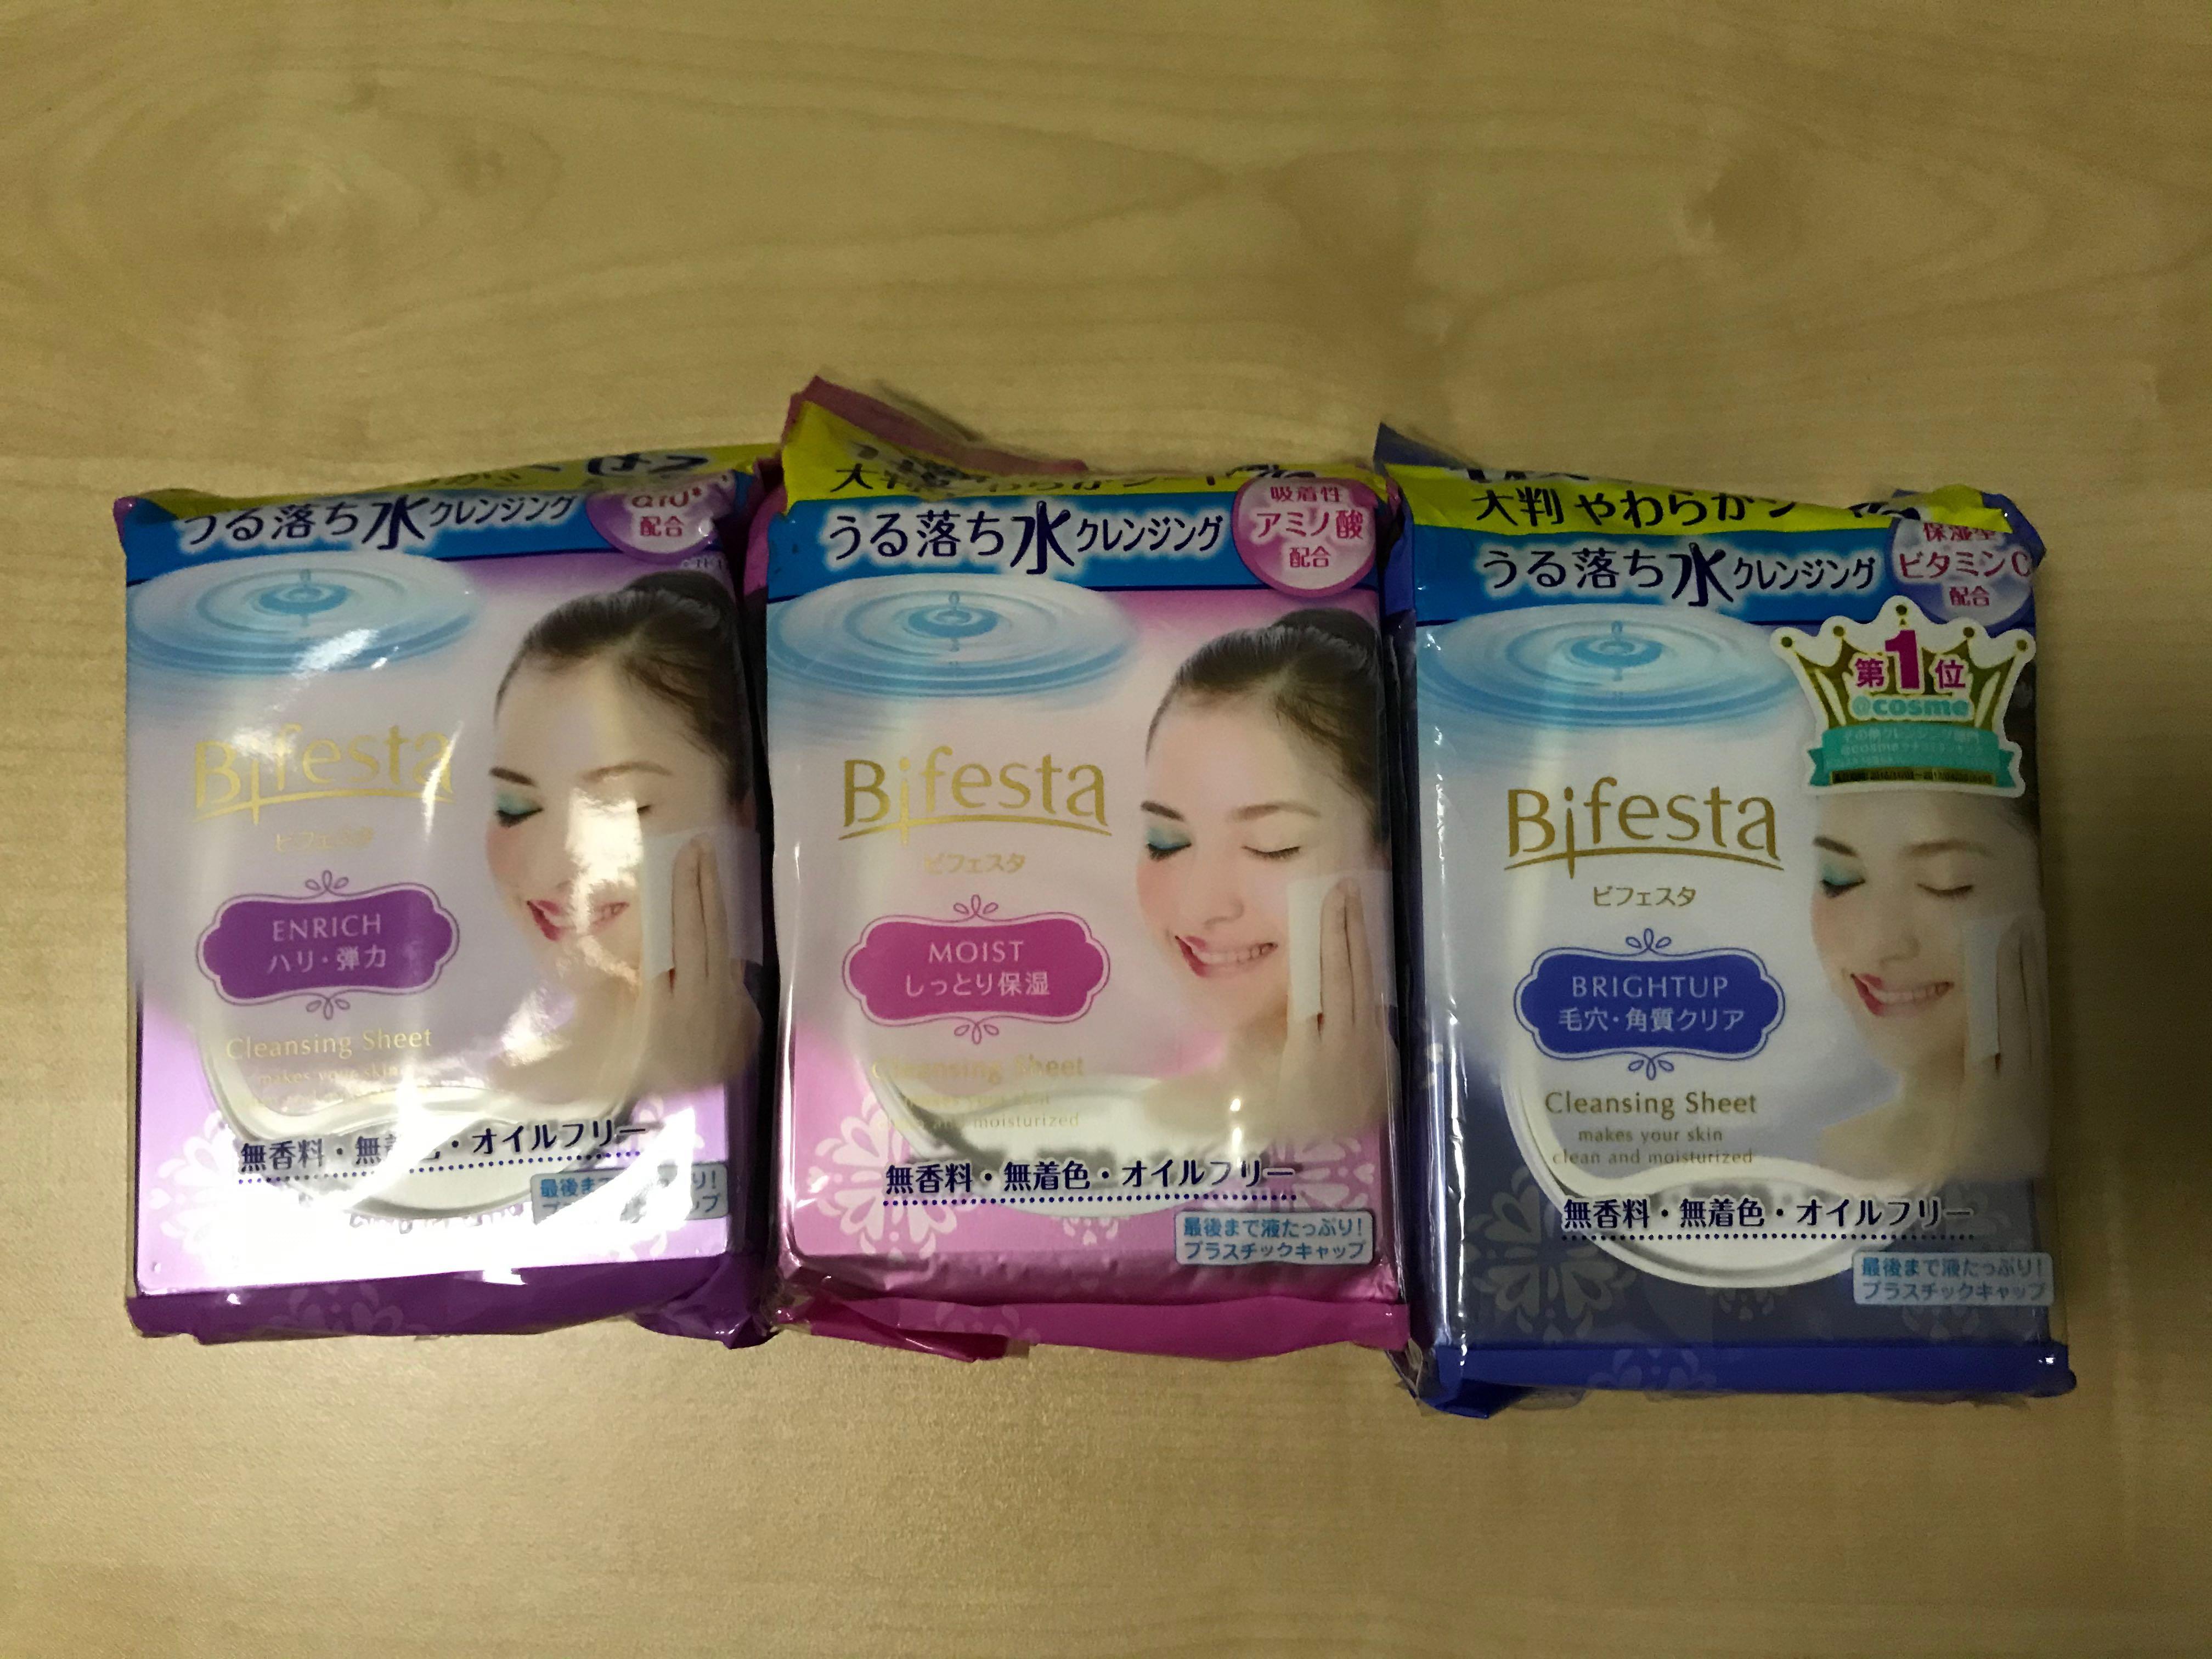 日本bifesta 卸妝濕紙巾卸妝巾enrich Moist Bright Up 彈力保濕毛孔去角質 美容 化妝品 化妝品 Carousell